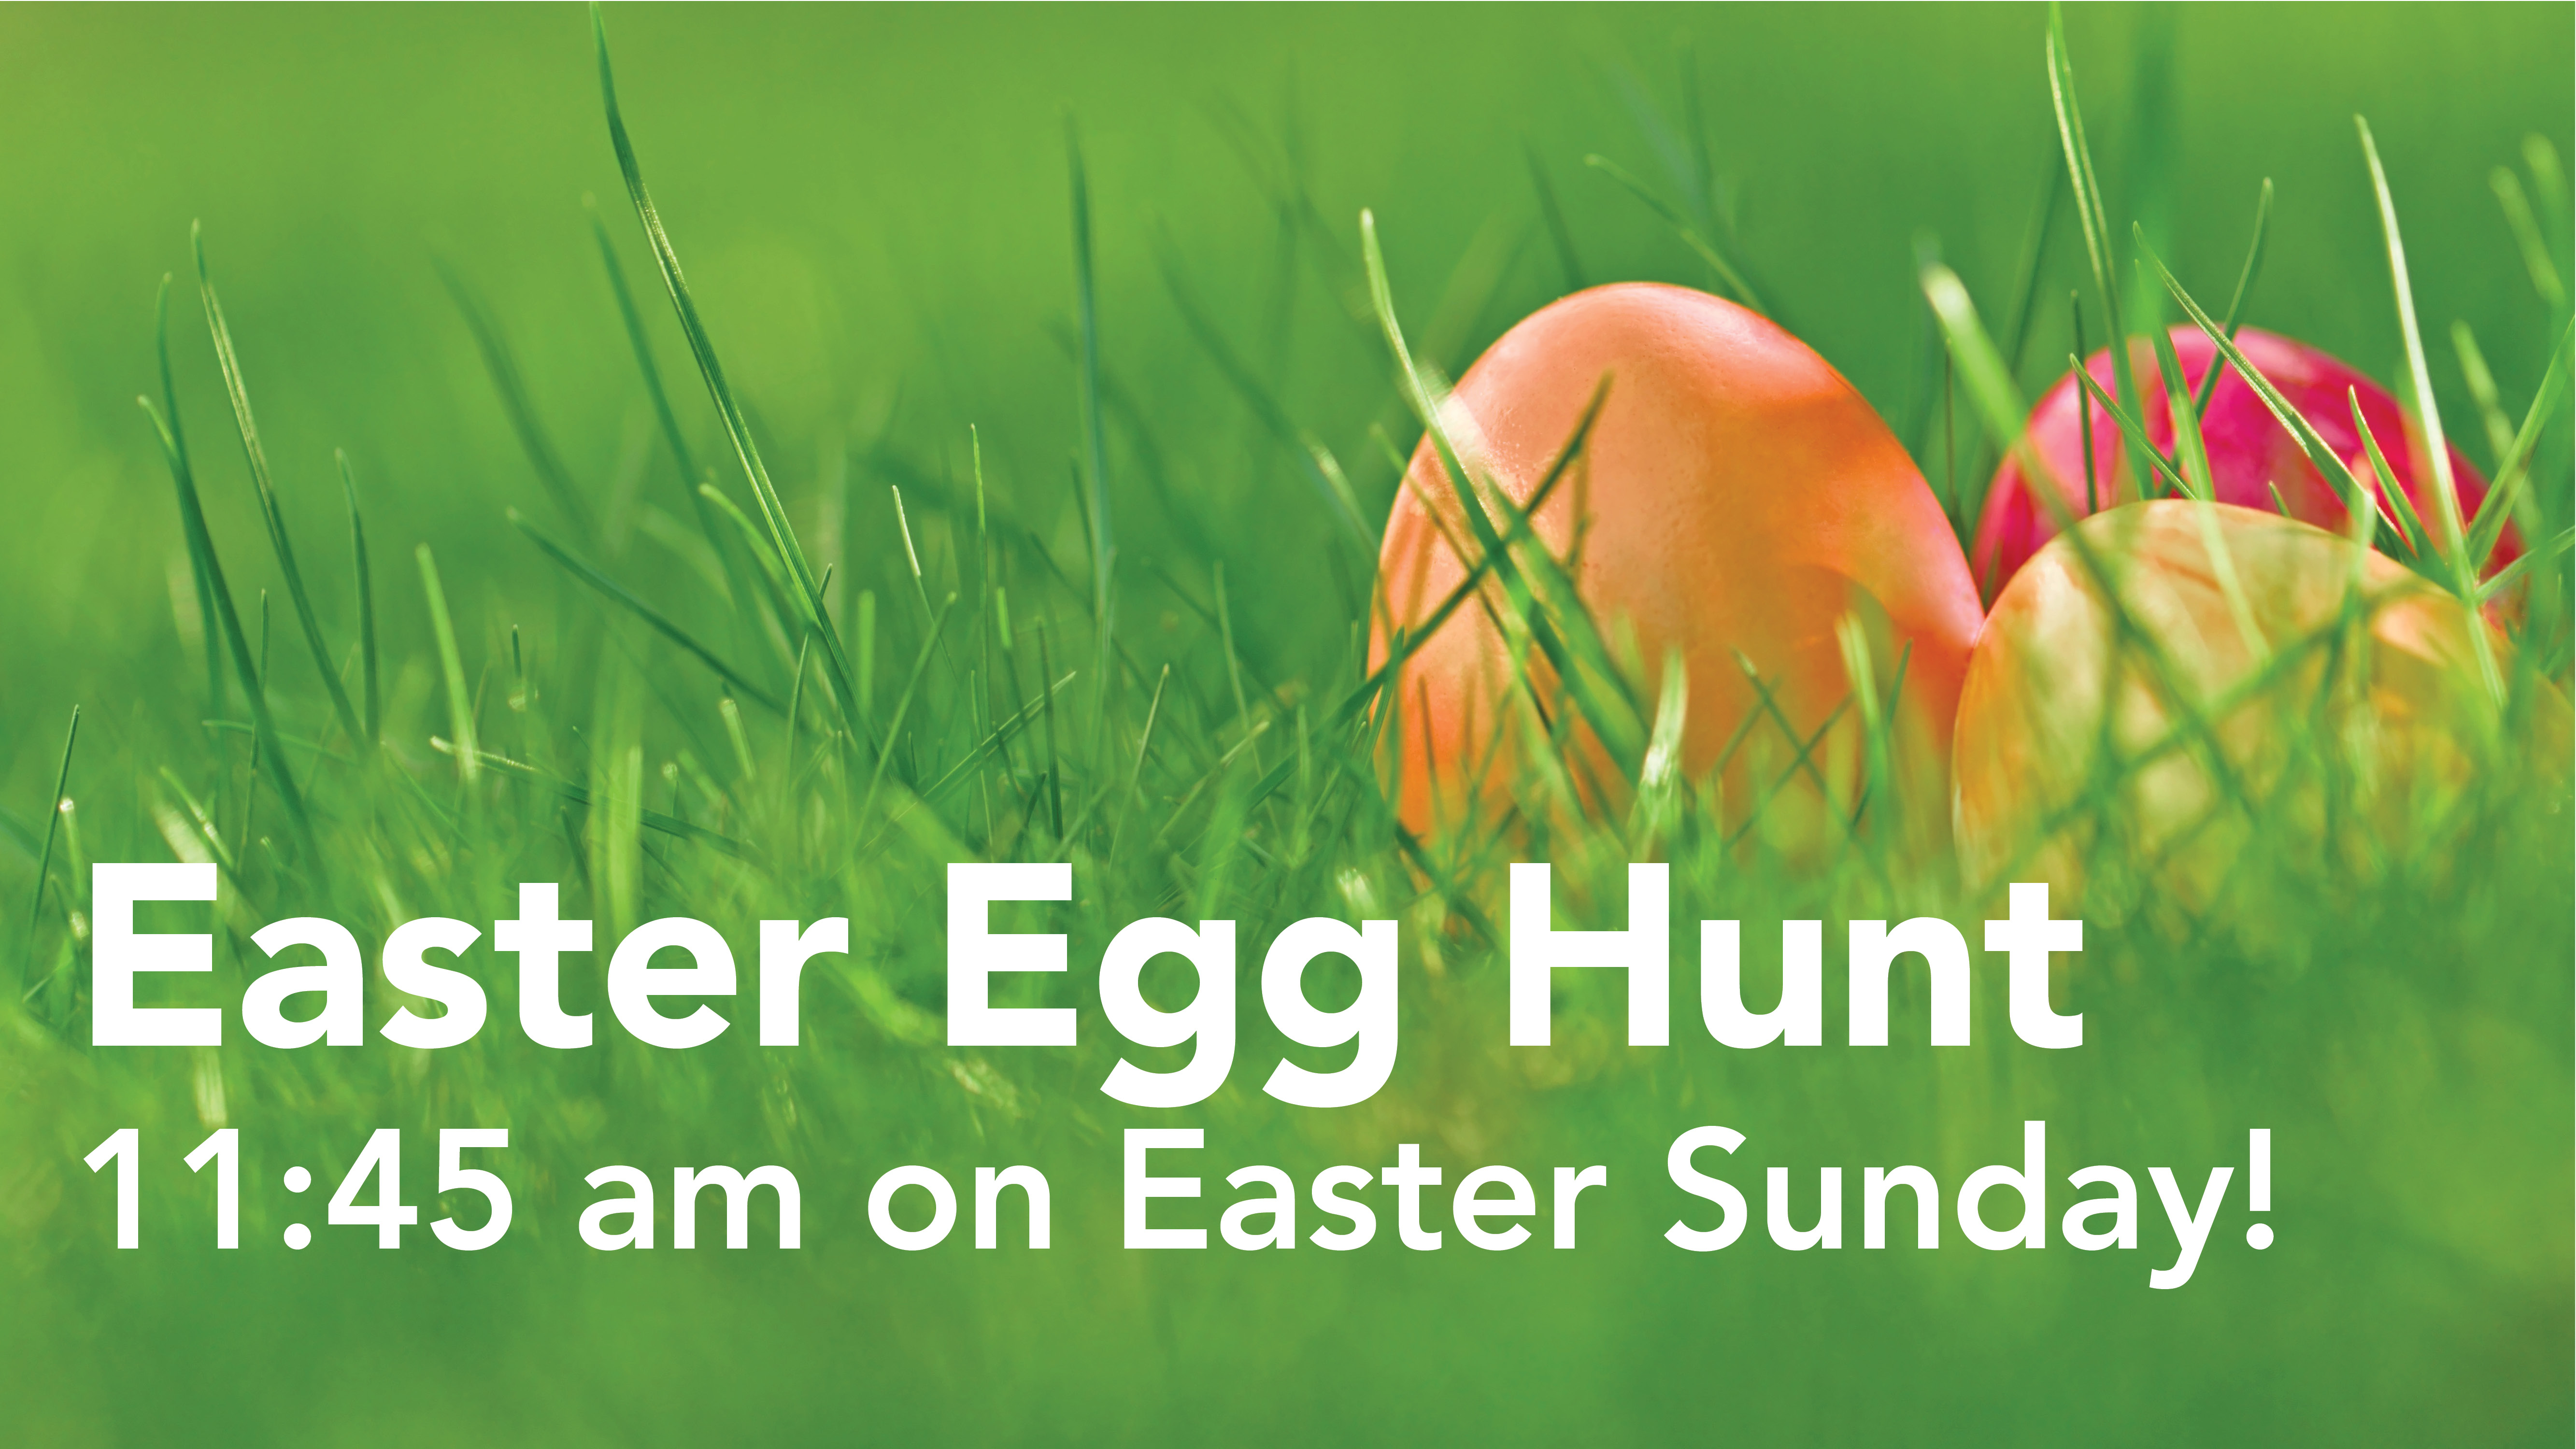 Announcement slide - Easter Egg Hunt